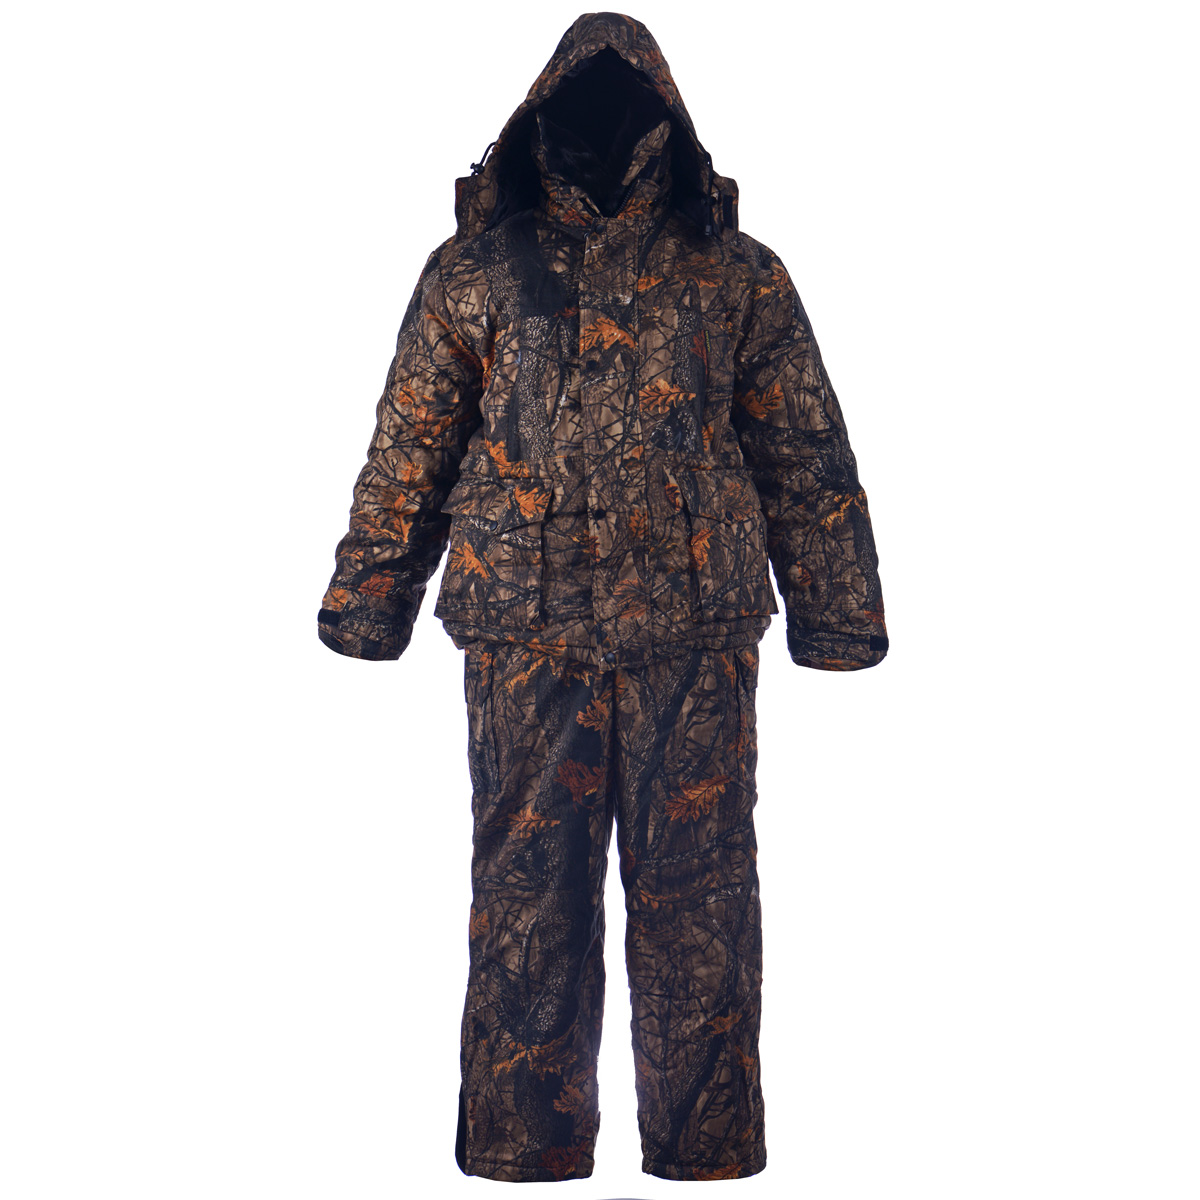 Комплект мужской Huntsman Буран-М: куртка, полукомбинезон, цвет: темный лес. Размер 48/50